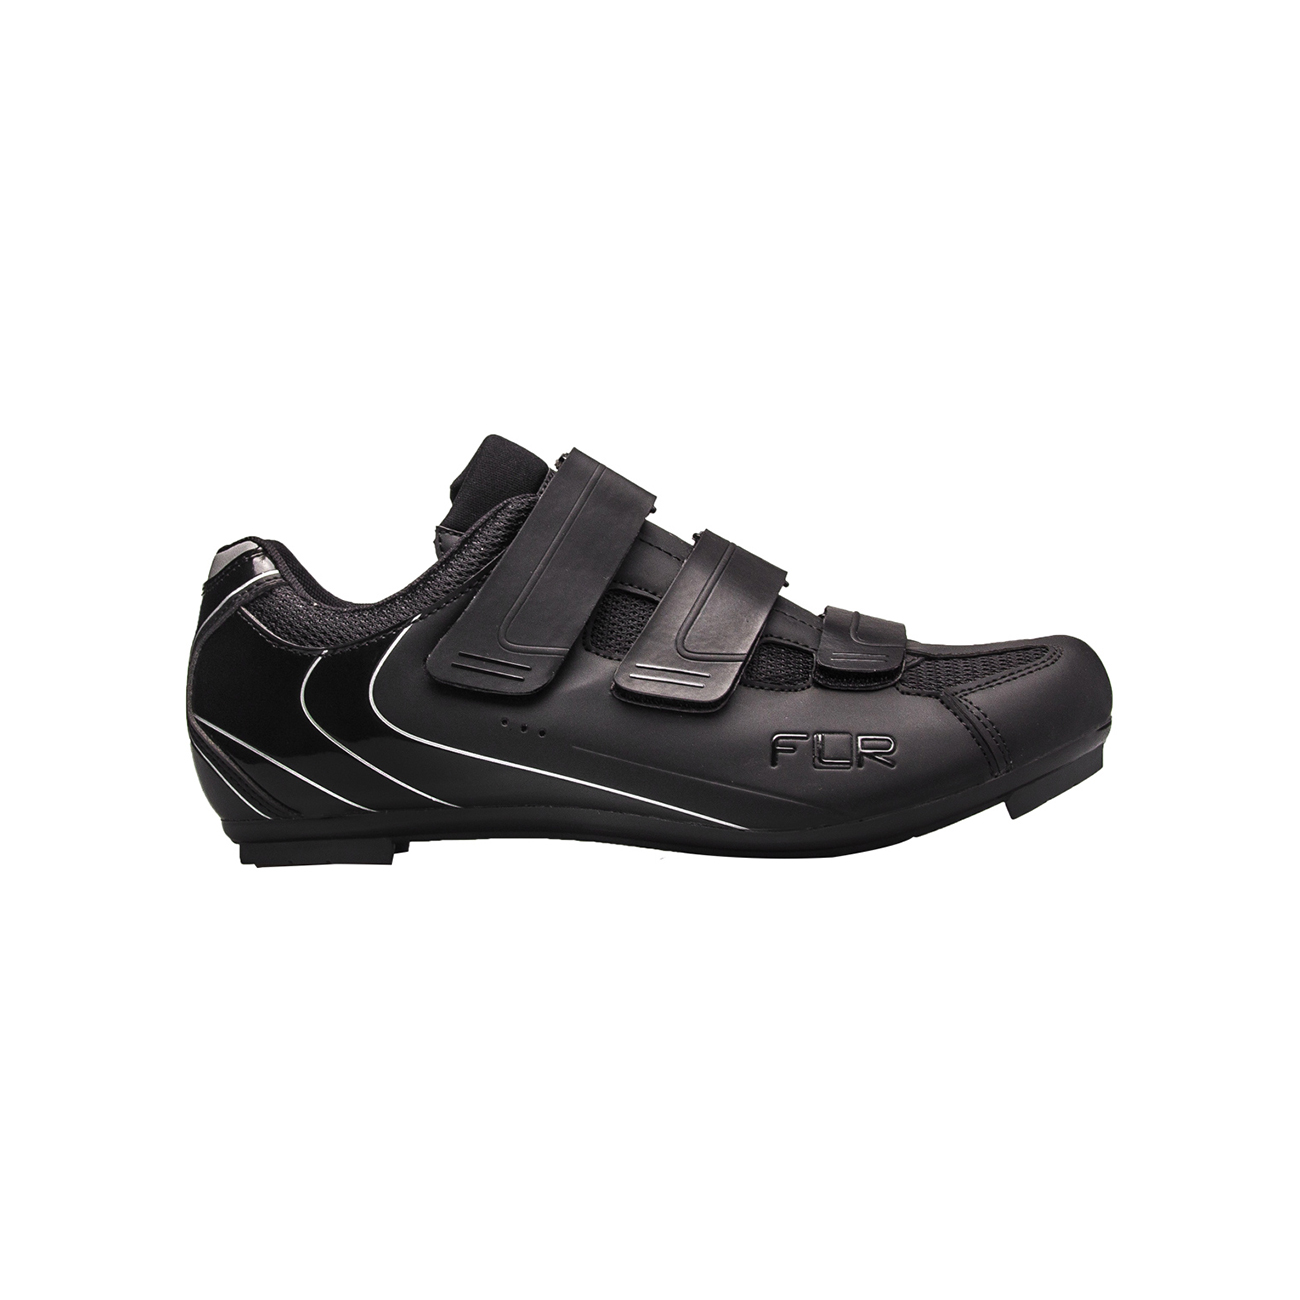 FLR Kerékpáros Cipő - F35 - Fekete